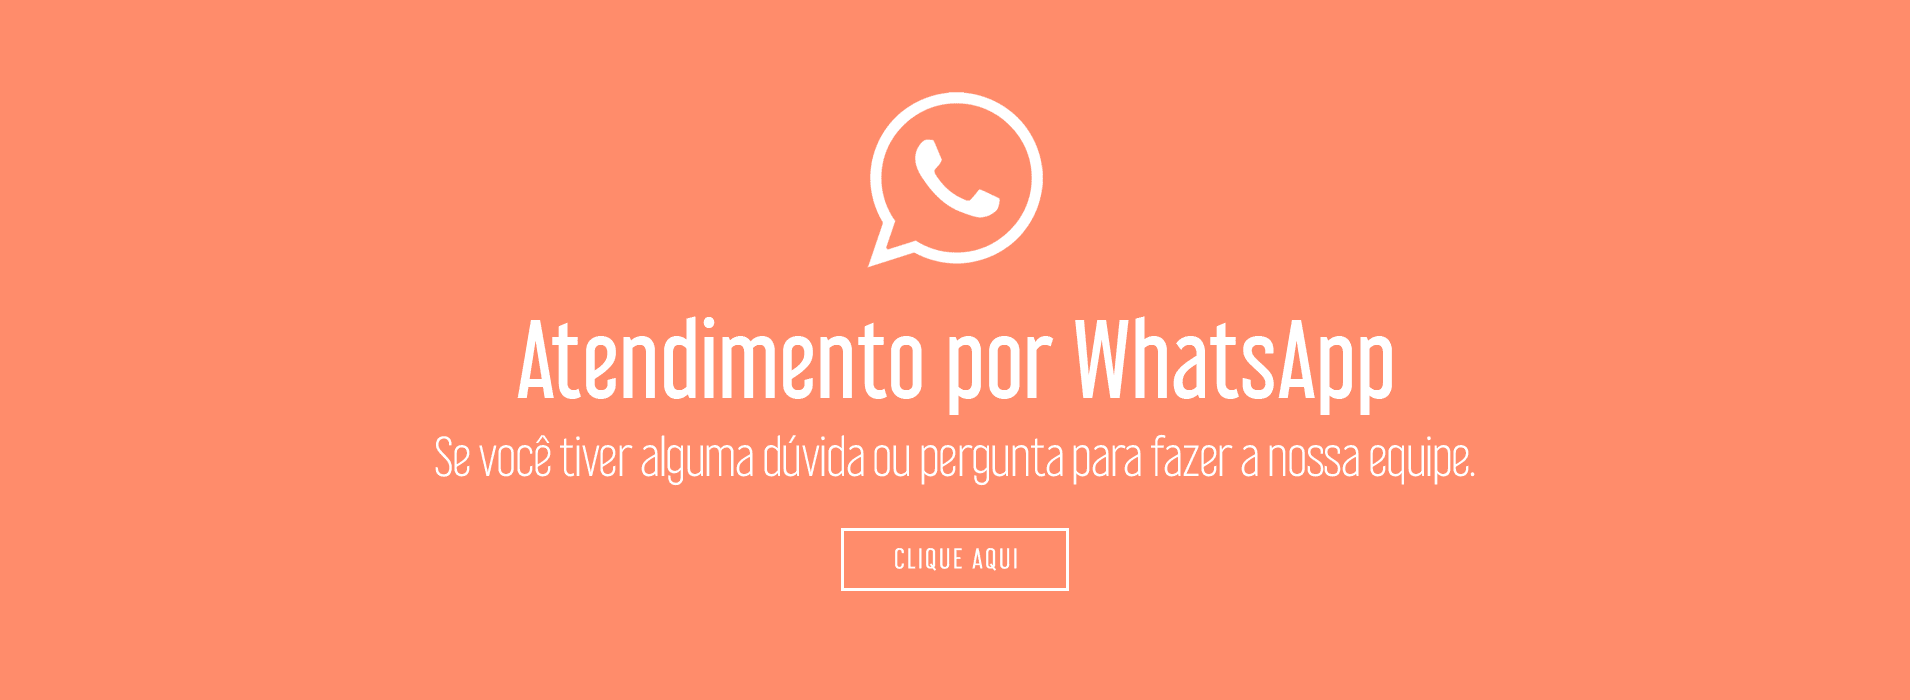 Banner WhatsApp - Desktop